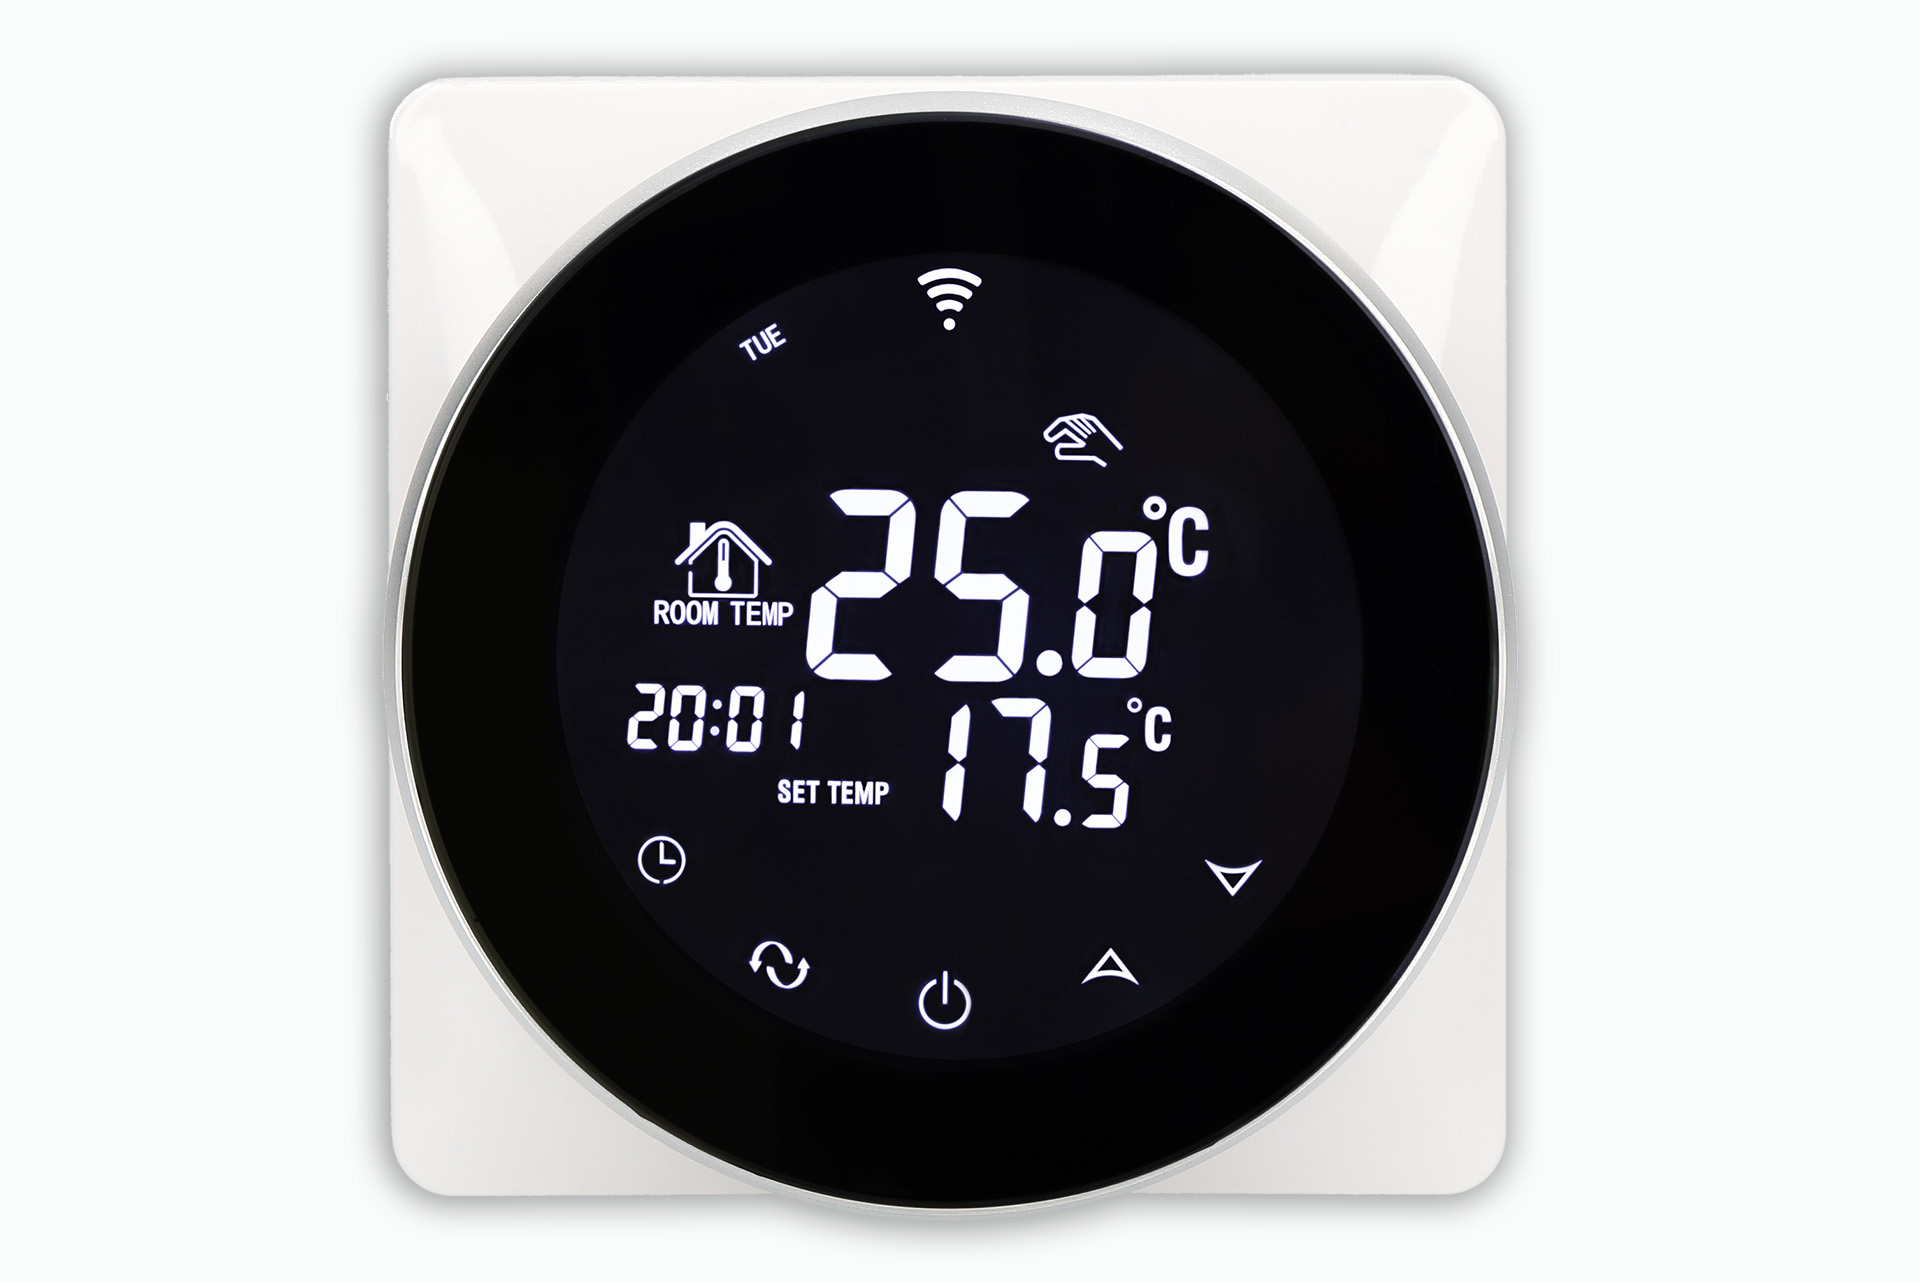 Aluzan Point-16 WiFi, programovatelný pokojový termostat pro spínání elektrického vytápění do 16A, ovladatelný na dálku pomocí aplikace pro Android nebo iOS